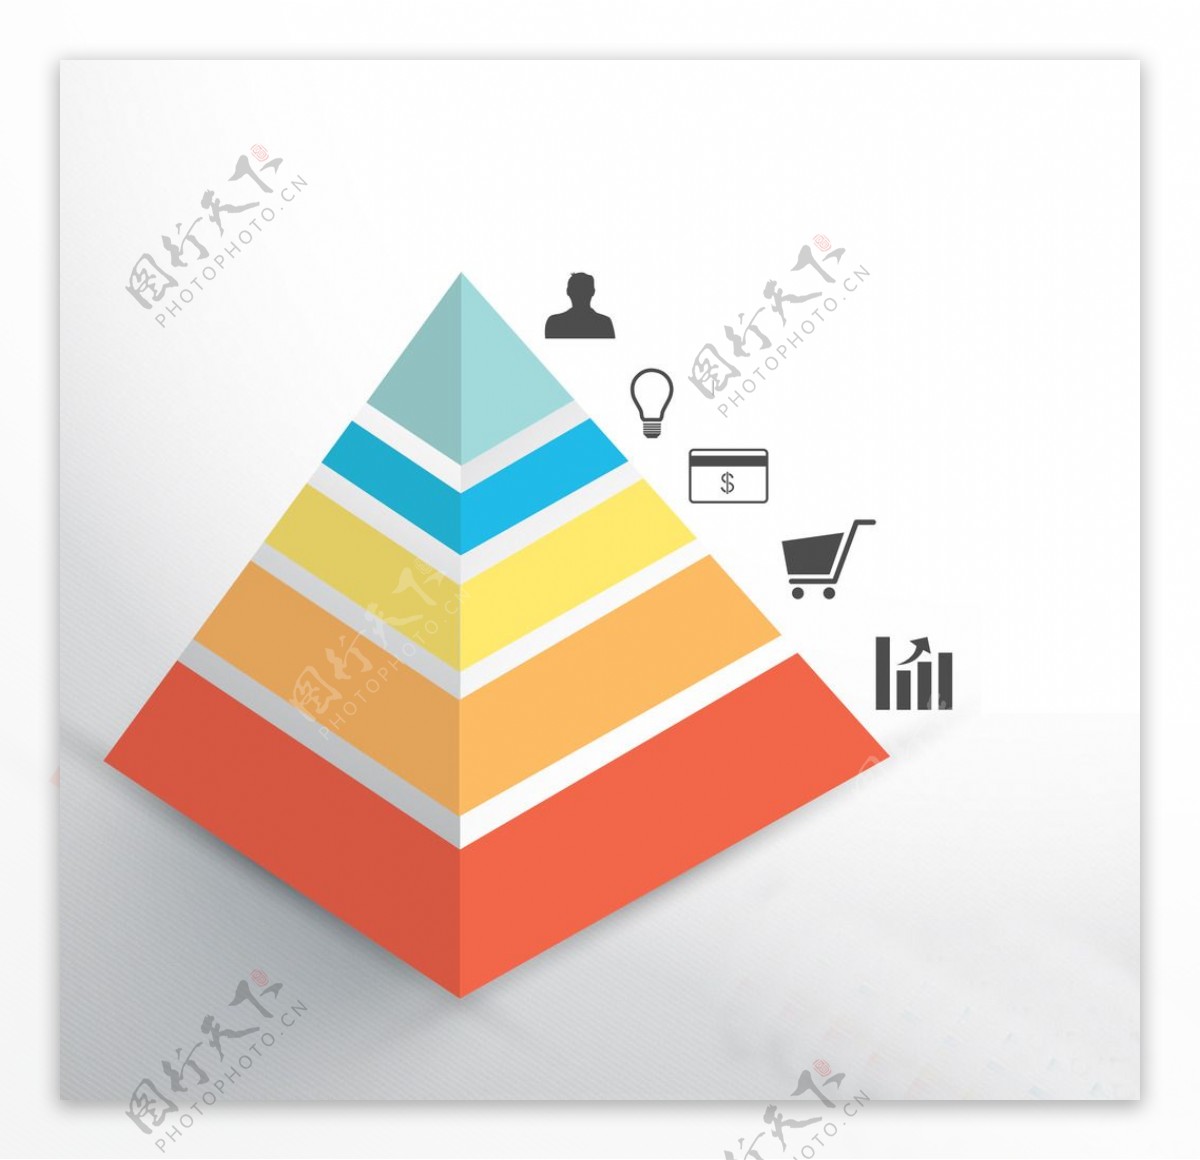 消费结构金字塔